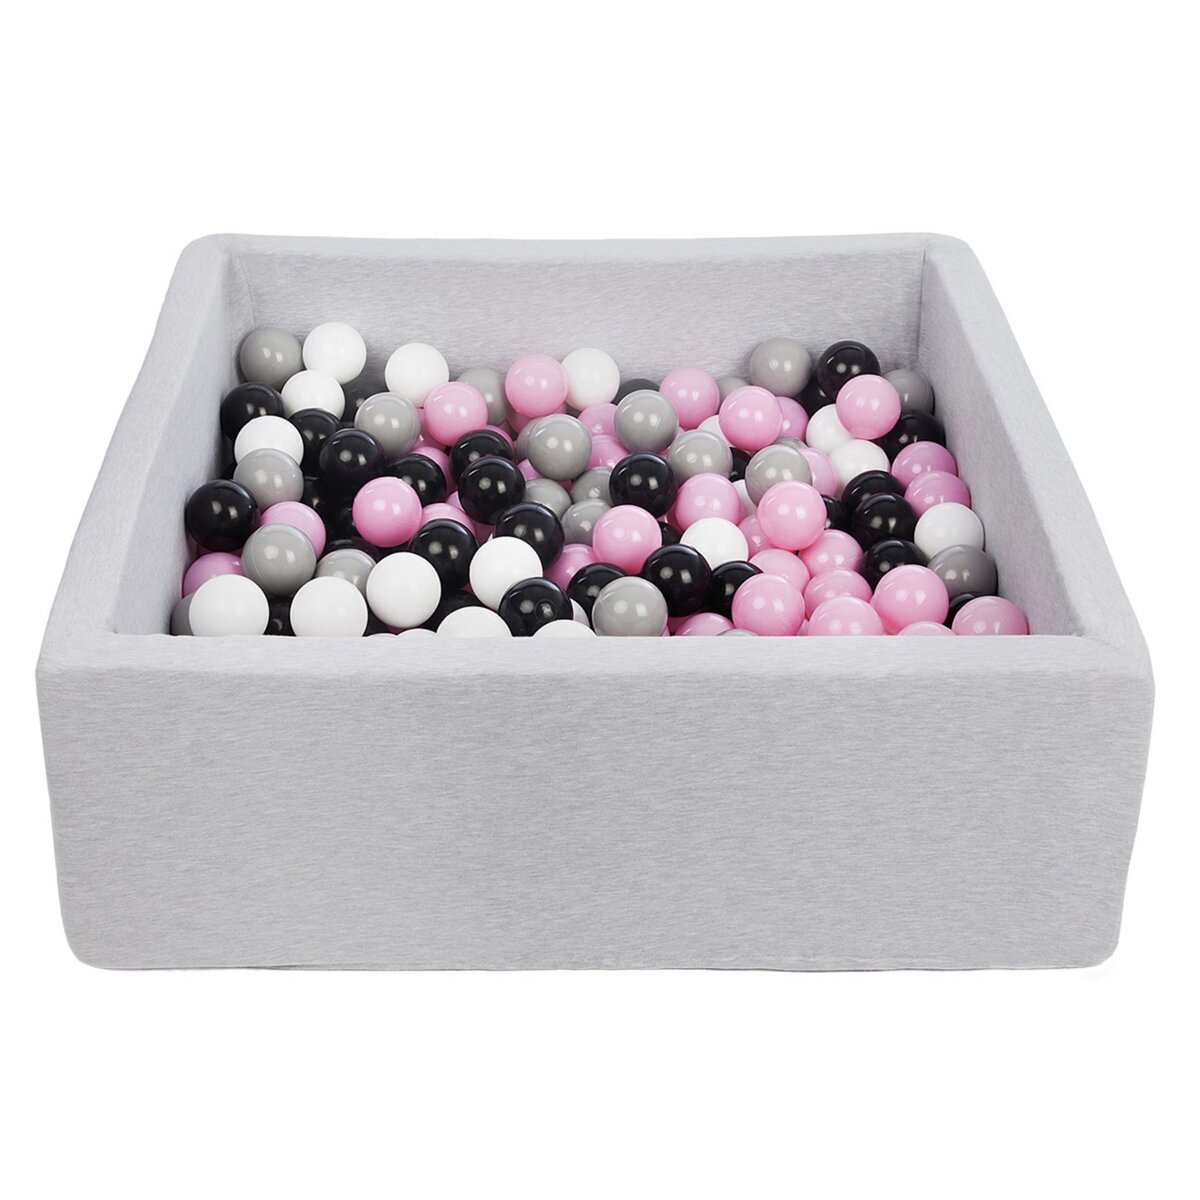  Piscine à balles pour enfant, 90x90 cm, Aire de jeu + 200 balles noir, blanc, rose clair,gris